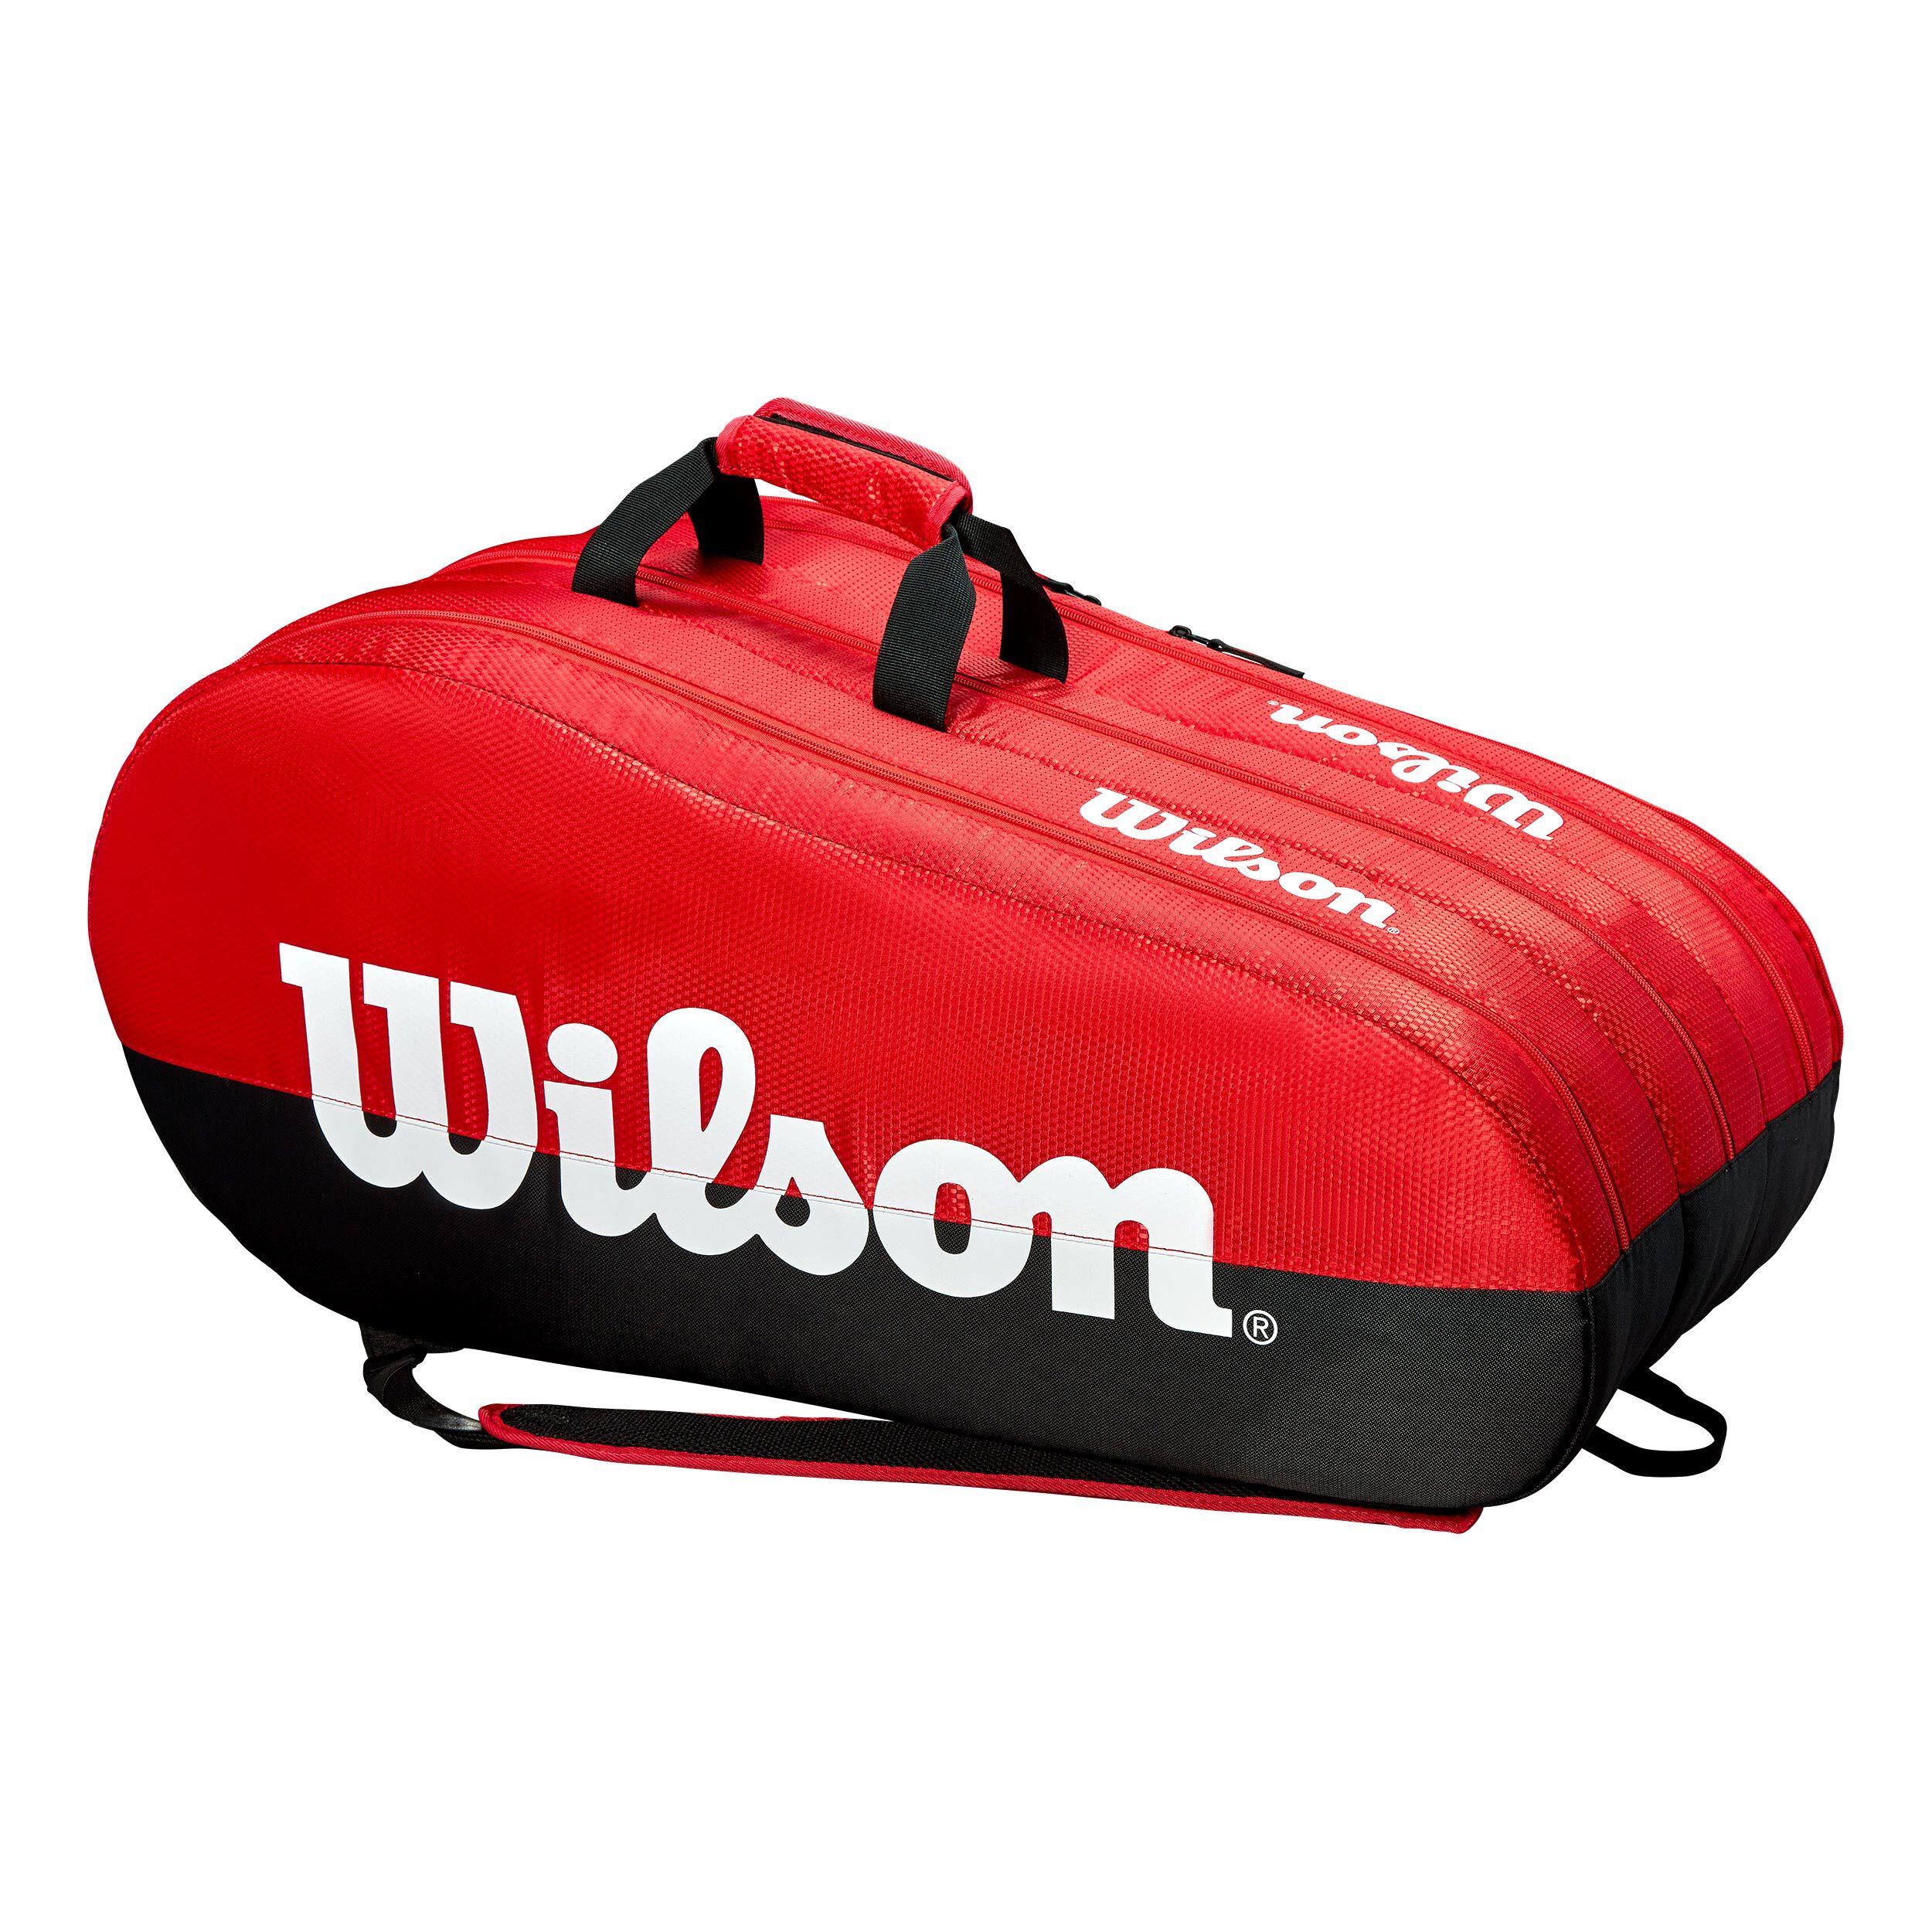 Wilson Team 3 Comp Tennistasche Racketbag rot NEU UVP 75,00€ 